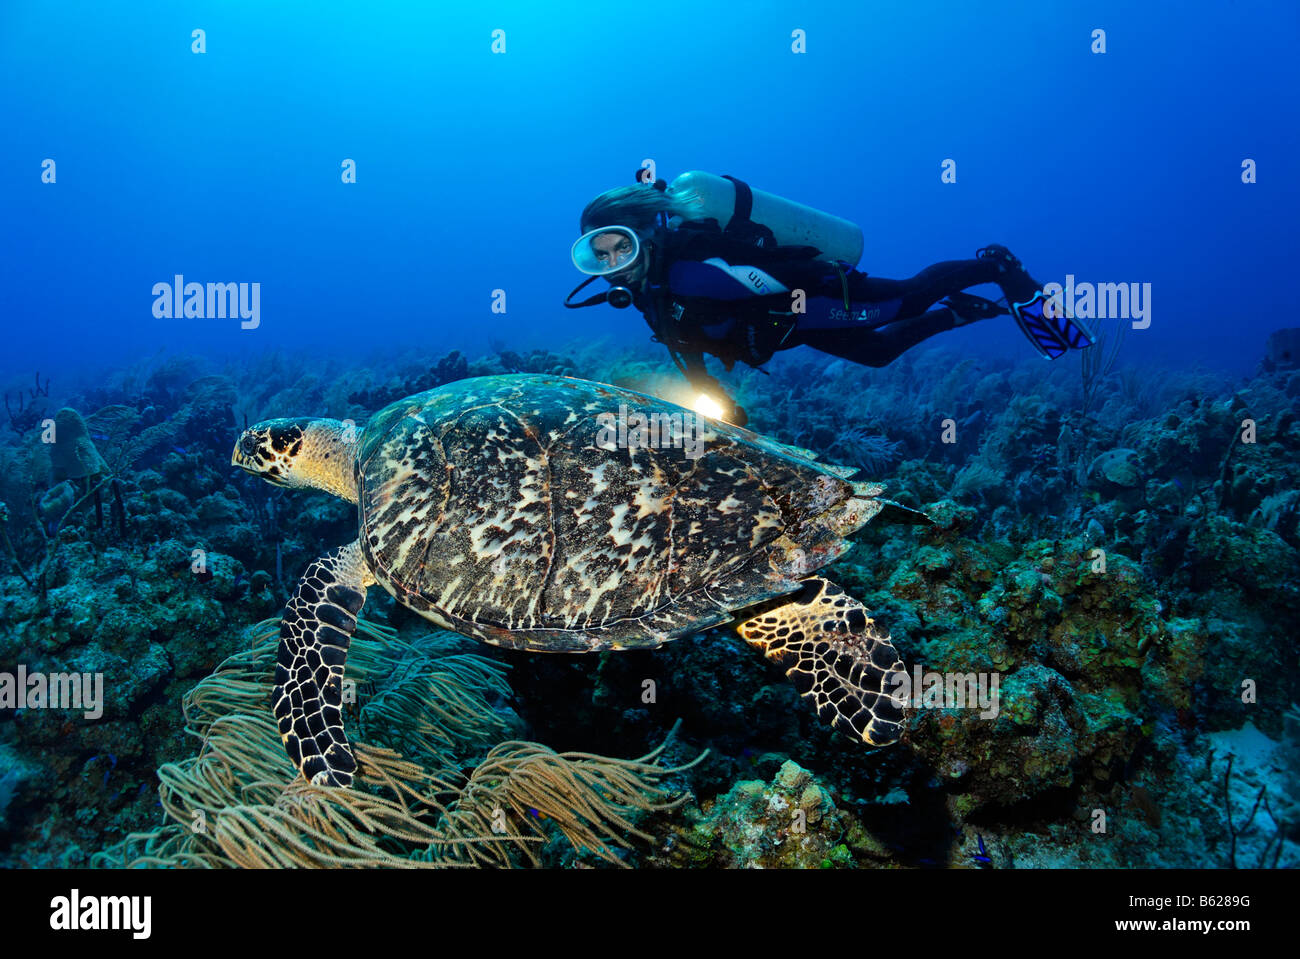 Plongeur femelle avec une lampe l'observation d'une véritable tortue imbriquée (Eretmochelys imbricata) dans un récif de corail, Turneffe Atoll, Belize, Banque D'Images